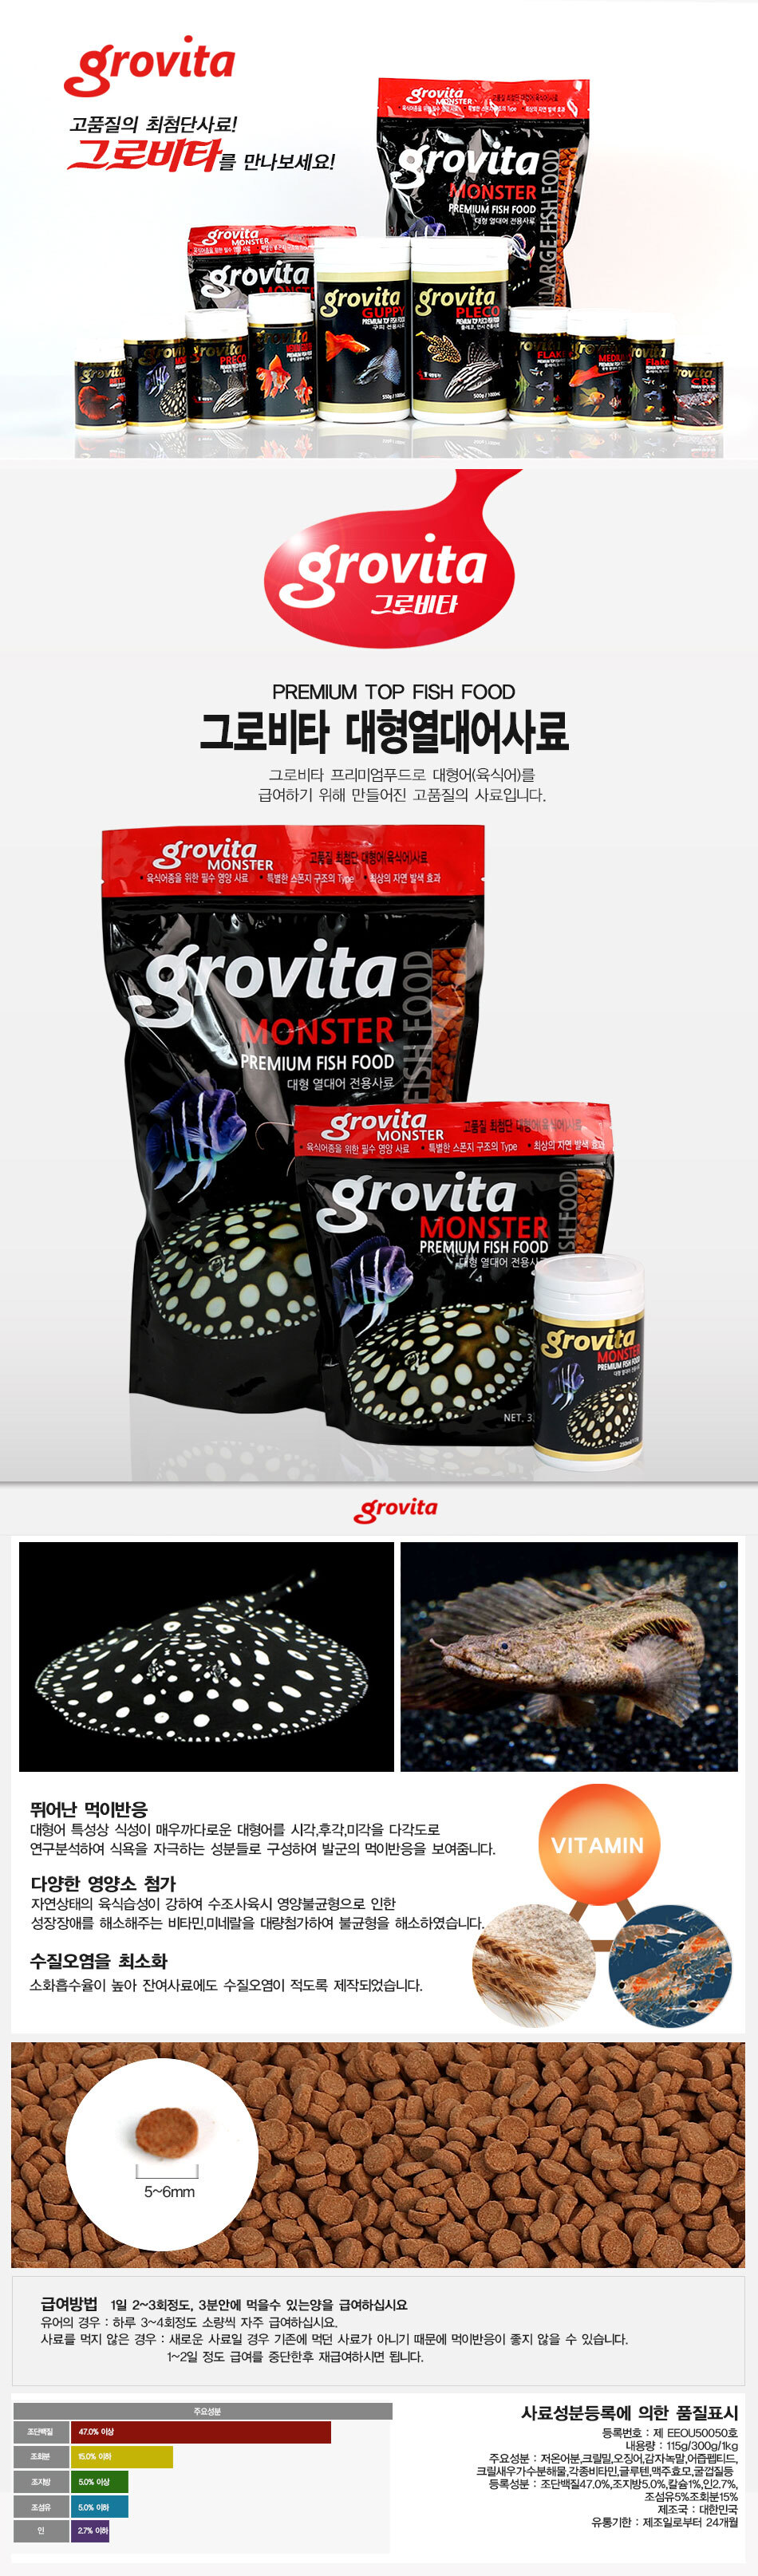 Grovita_Monster_D.jpg